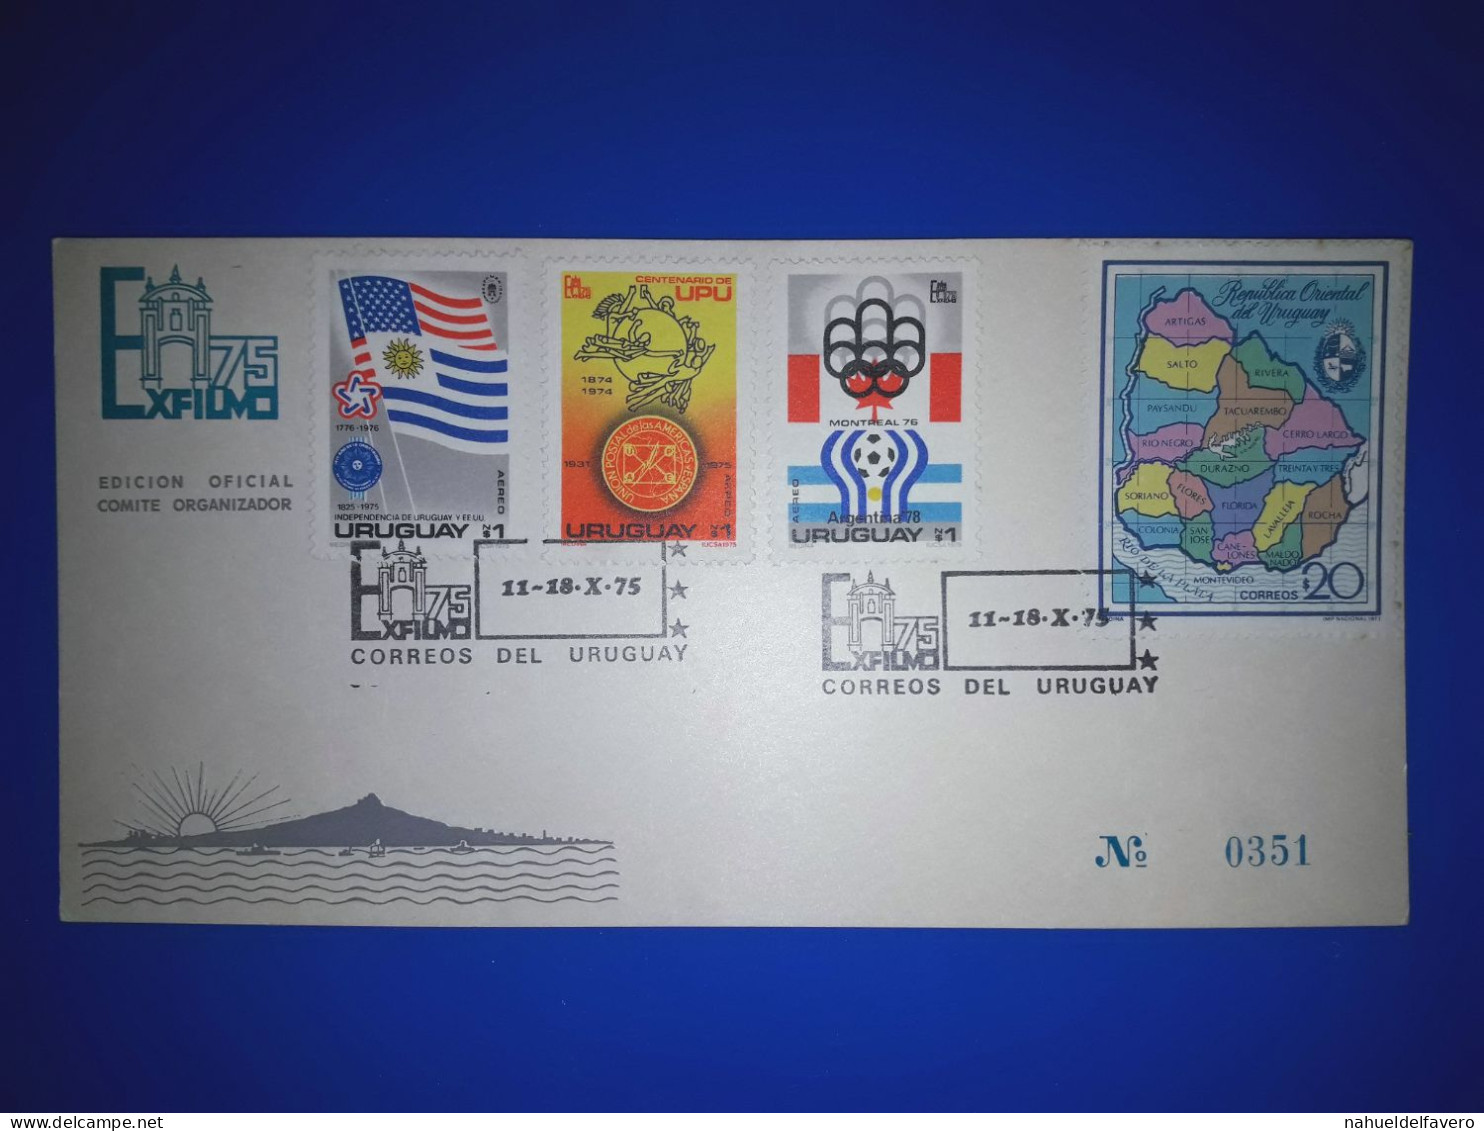 URUGUAY : Carte Commémorative De "Exfilmo 75" (Edition Officielle Du Comité D'Organisation). Variété De Timbres-poste Et - Uruguay